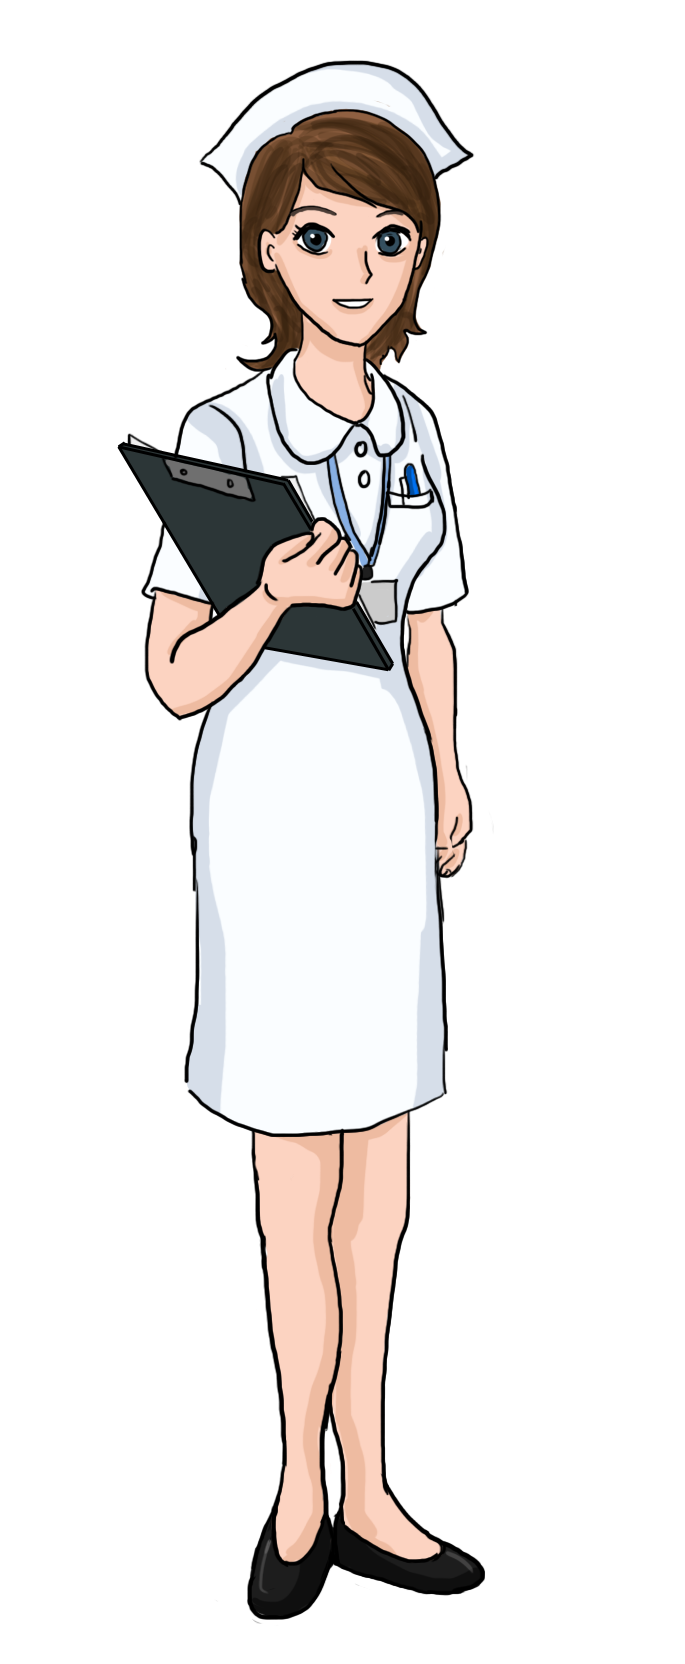 Nurse Cartoon Clipart - Nurse Cartoon Nurses Clipart Izzy Group ...